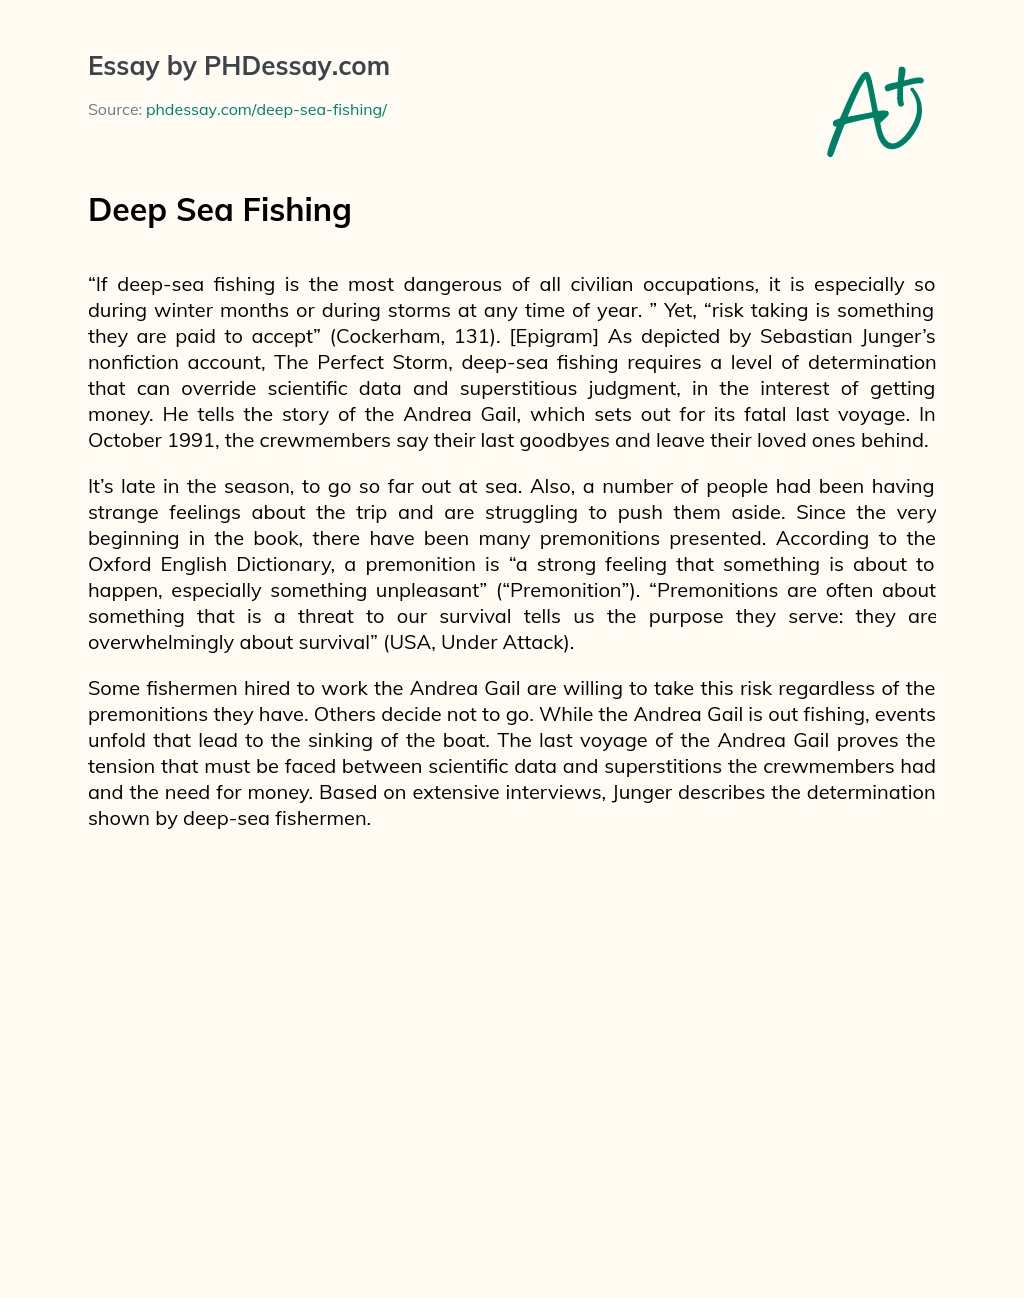 Deep Sea Fishing essay